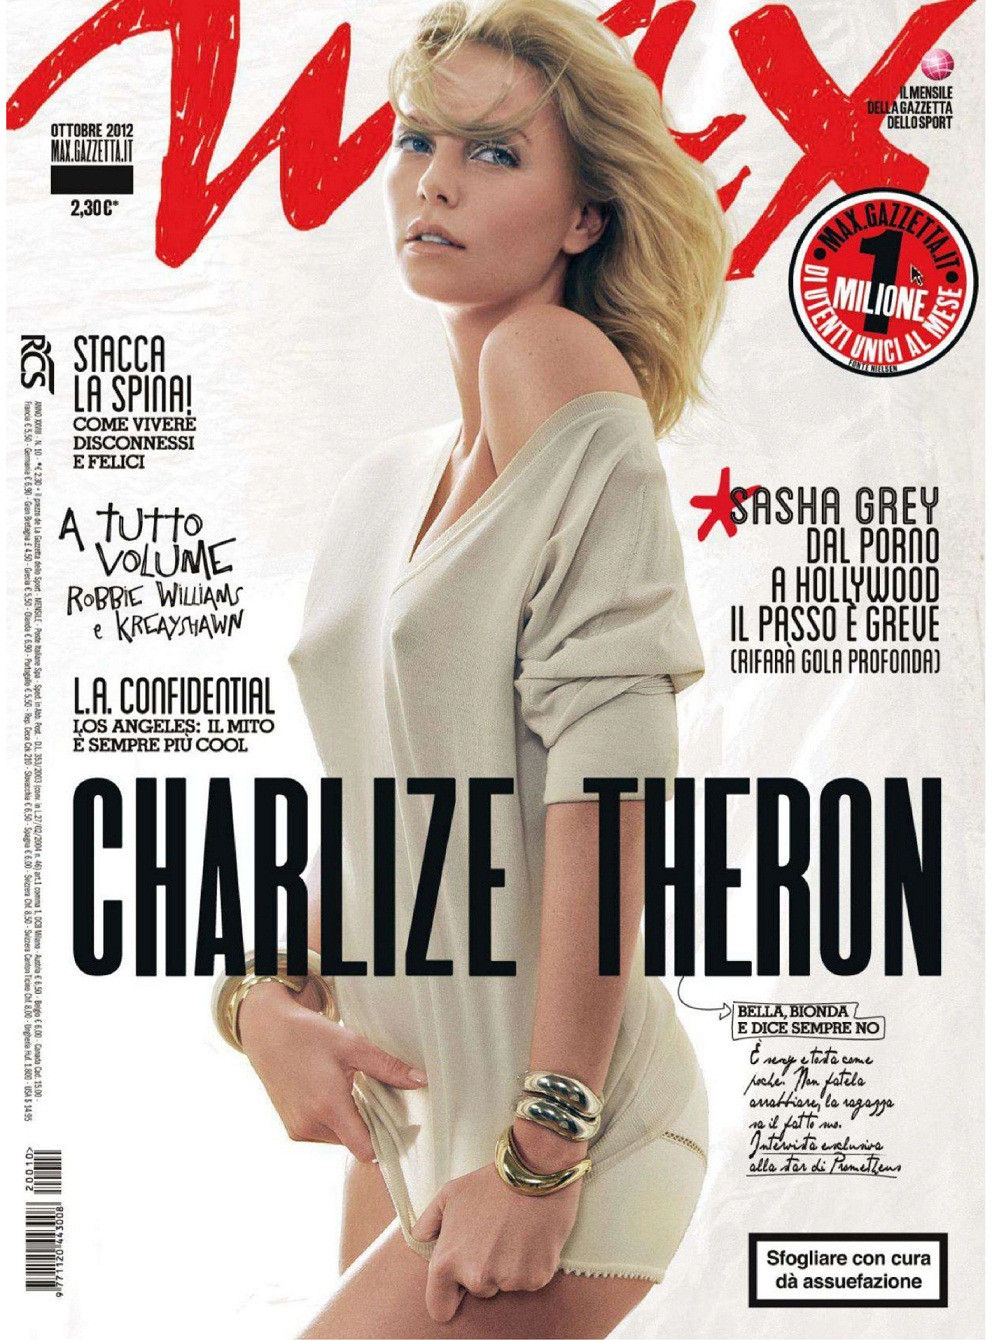 Шарлиз Тэрон (Charlize Theron)